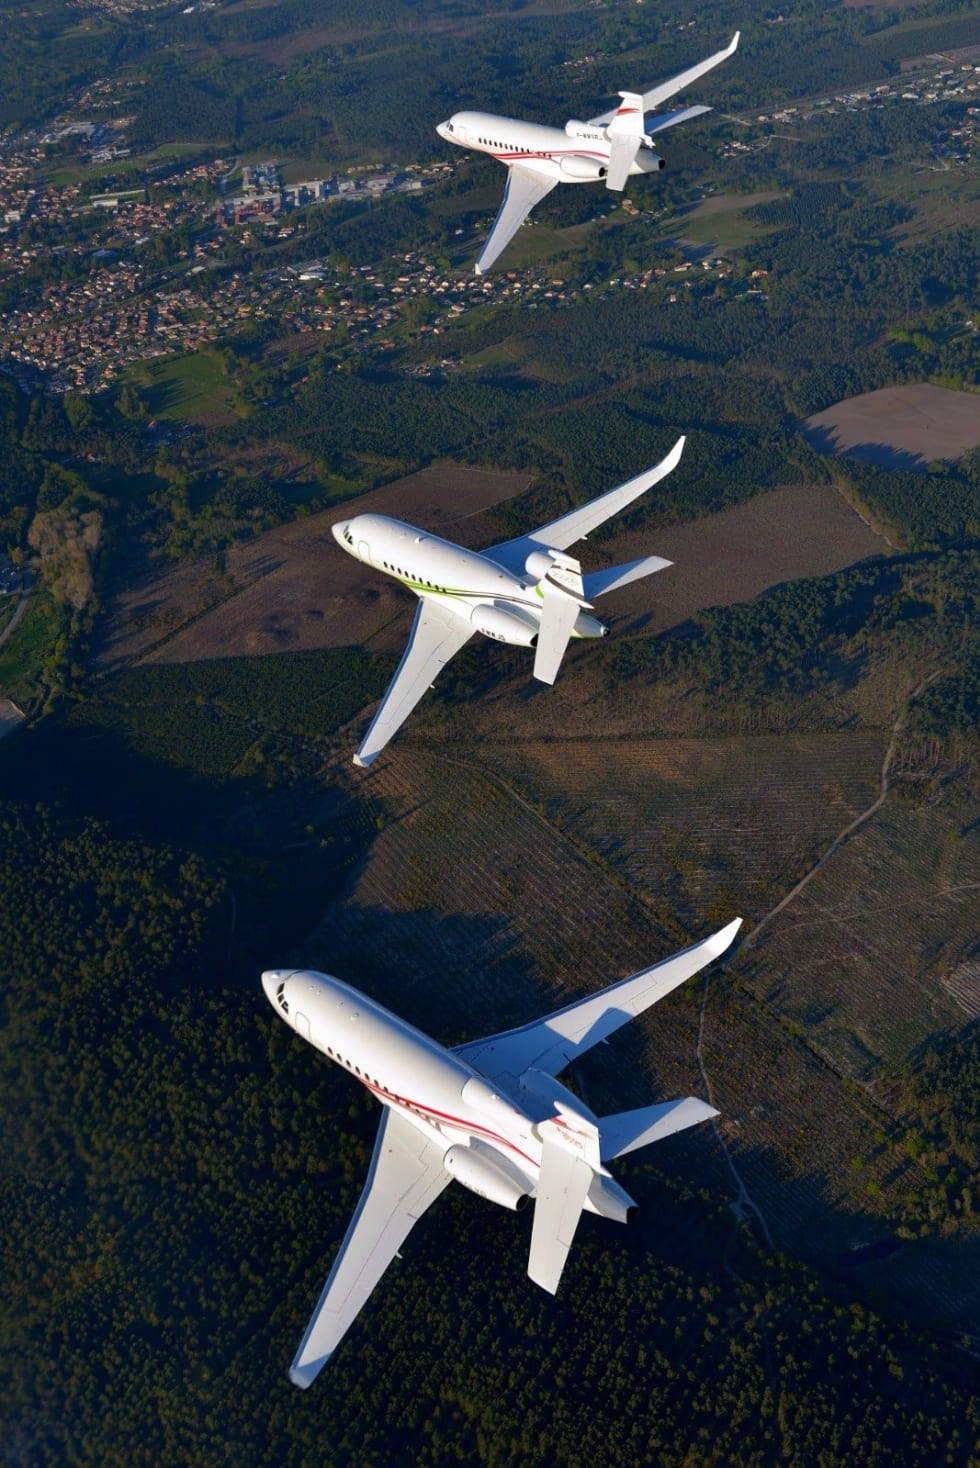 Falcon 7X, Falcon 2000S and Falcon 900LX